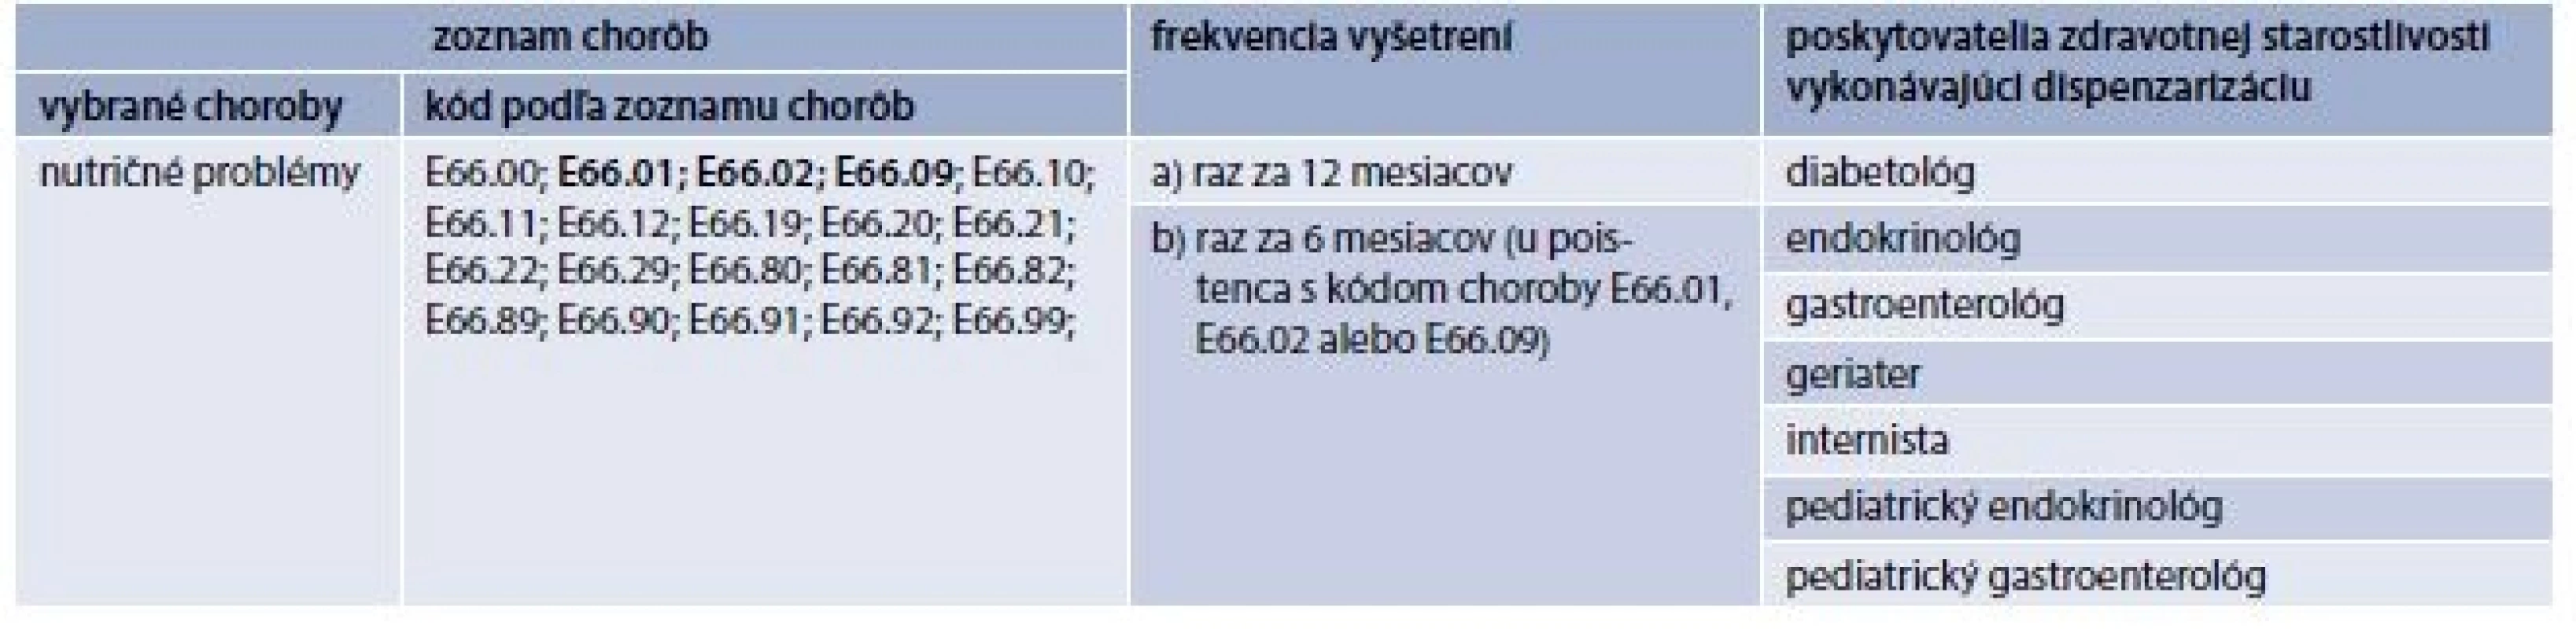 Frekvencia vyšetrení u dispenzarizovaných obéznych pacientov podľa Vyhlášky Ministerstva
zdravotníctva Slovenskej Republiky, máj 2014